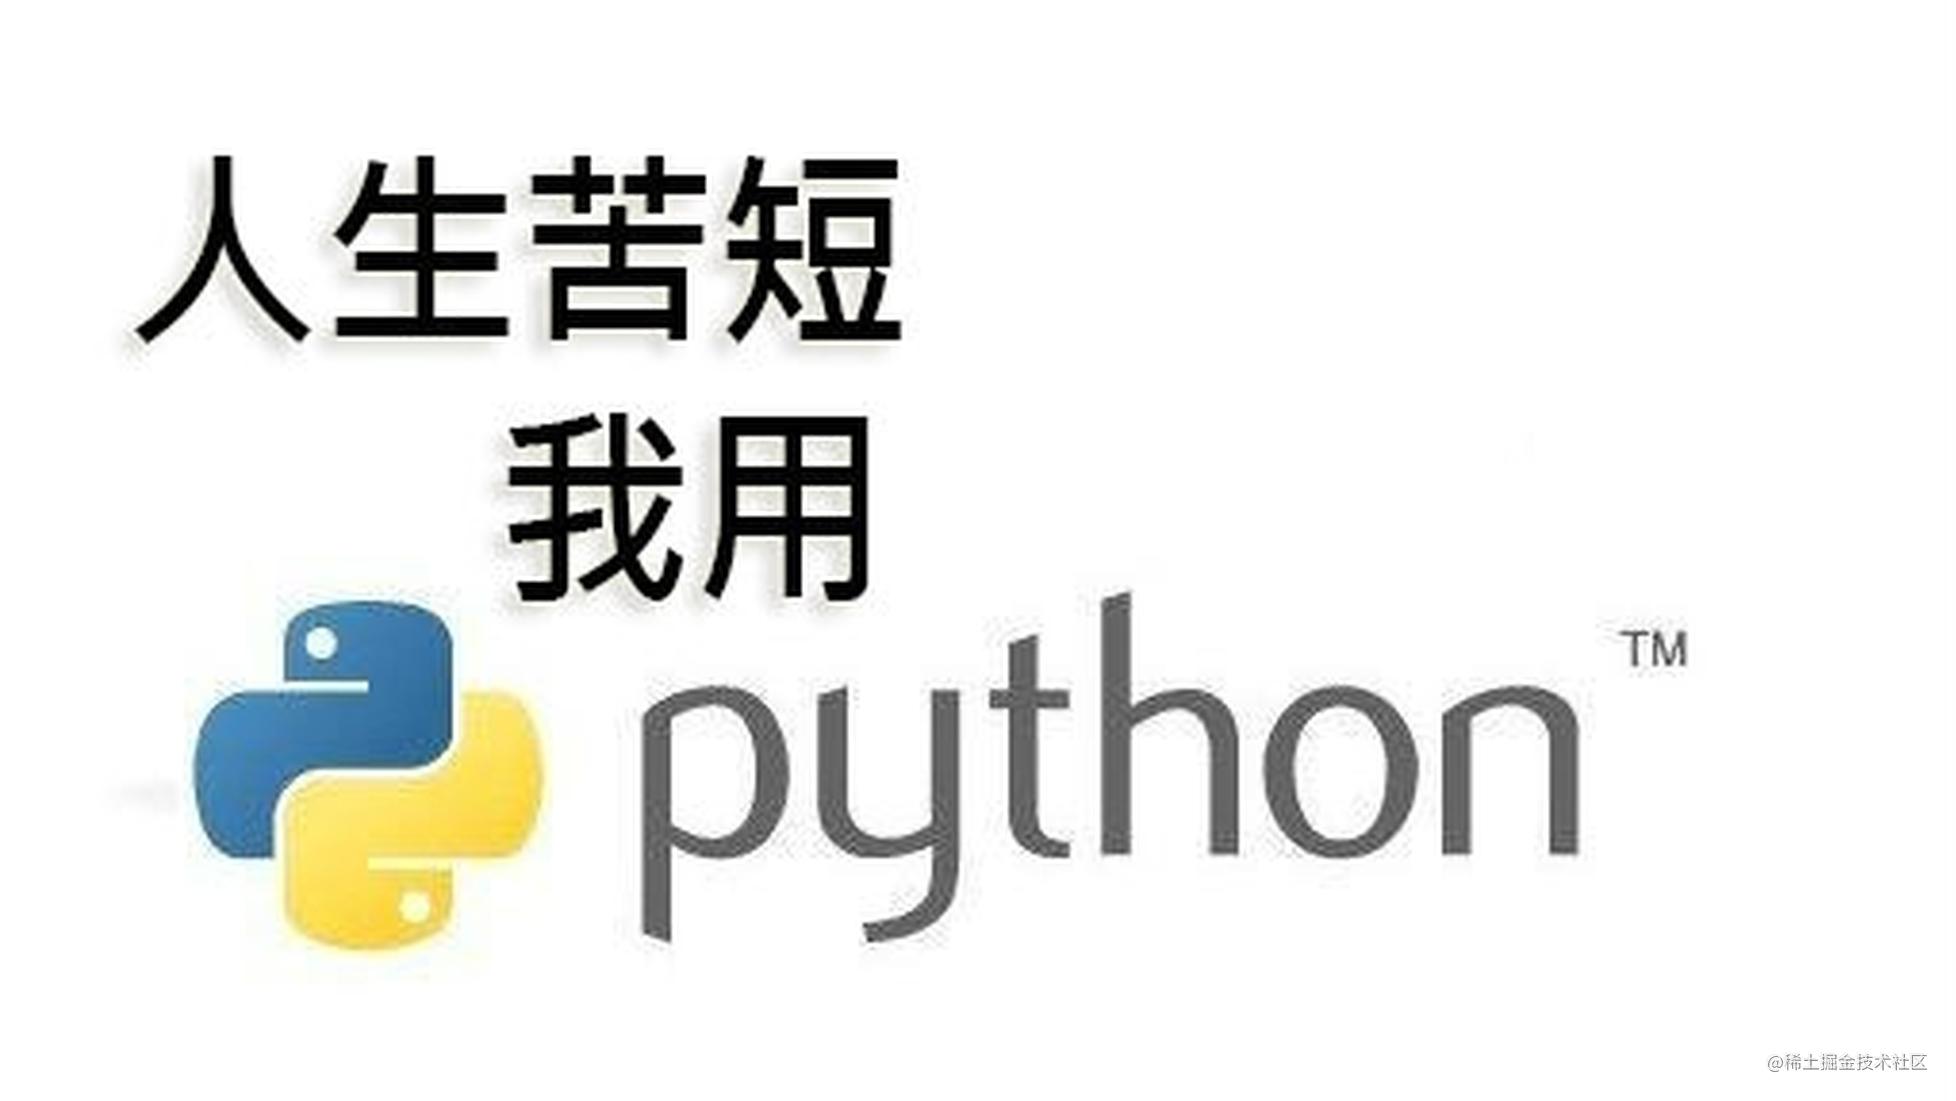 详解 Python 模板引擎工作机制